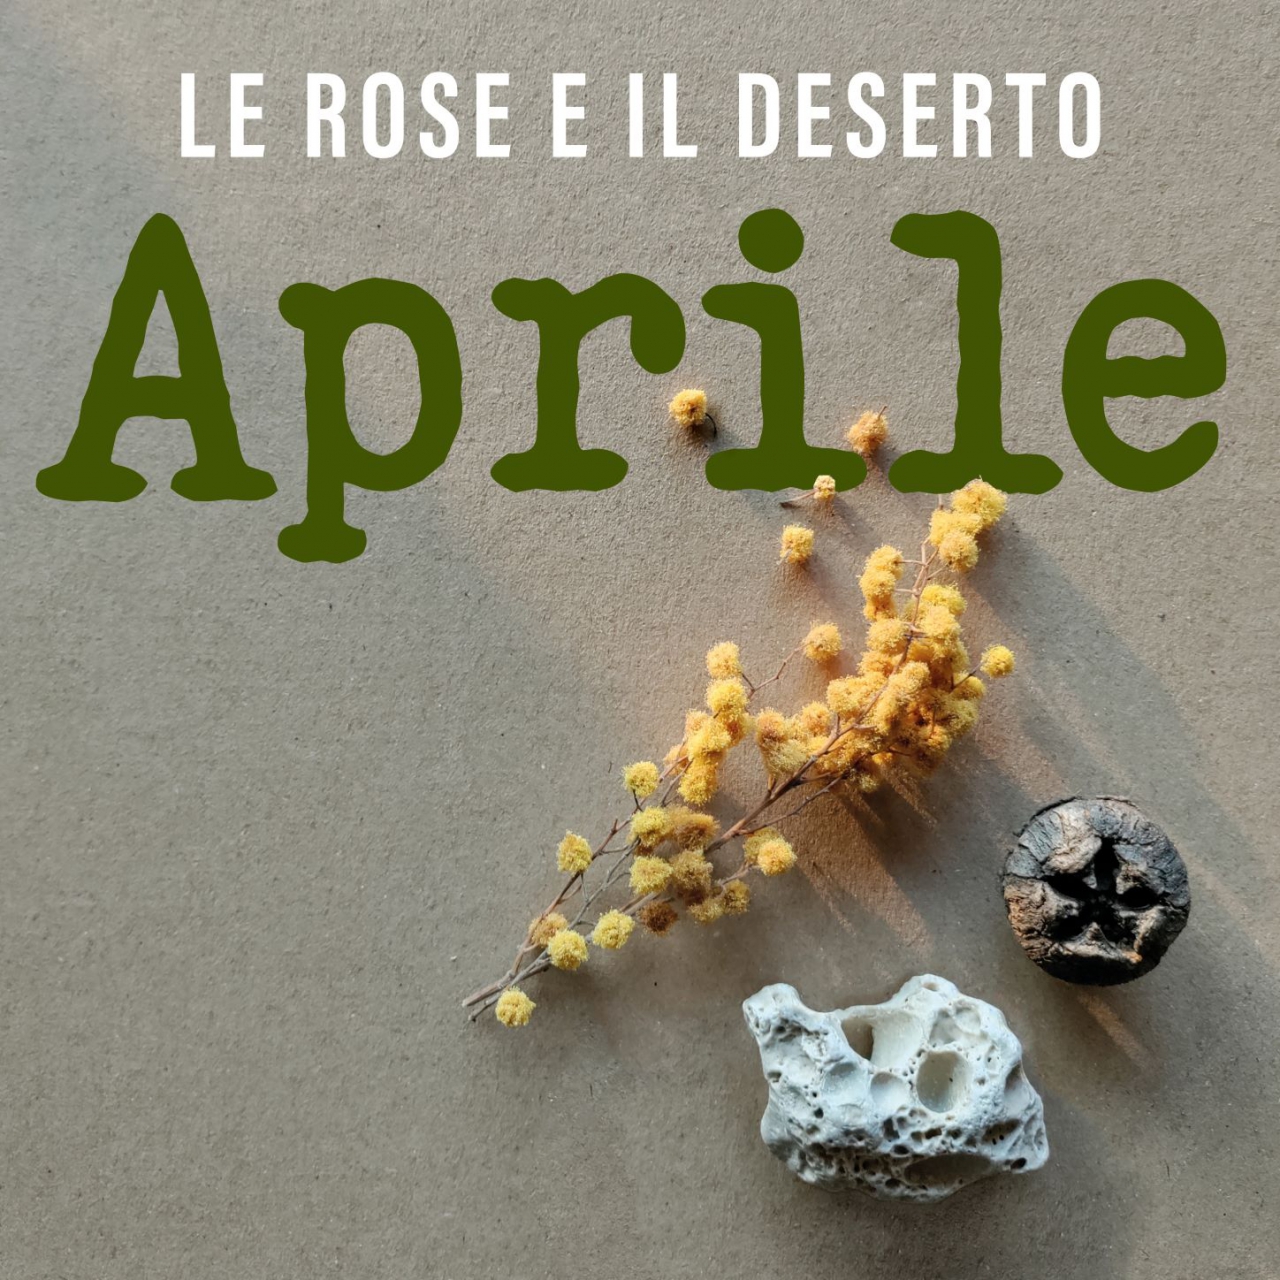 Le rose e il deserto - “Aprile”